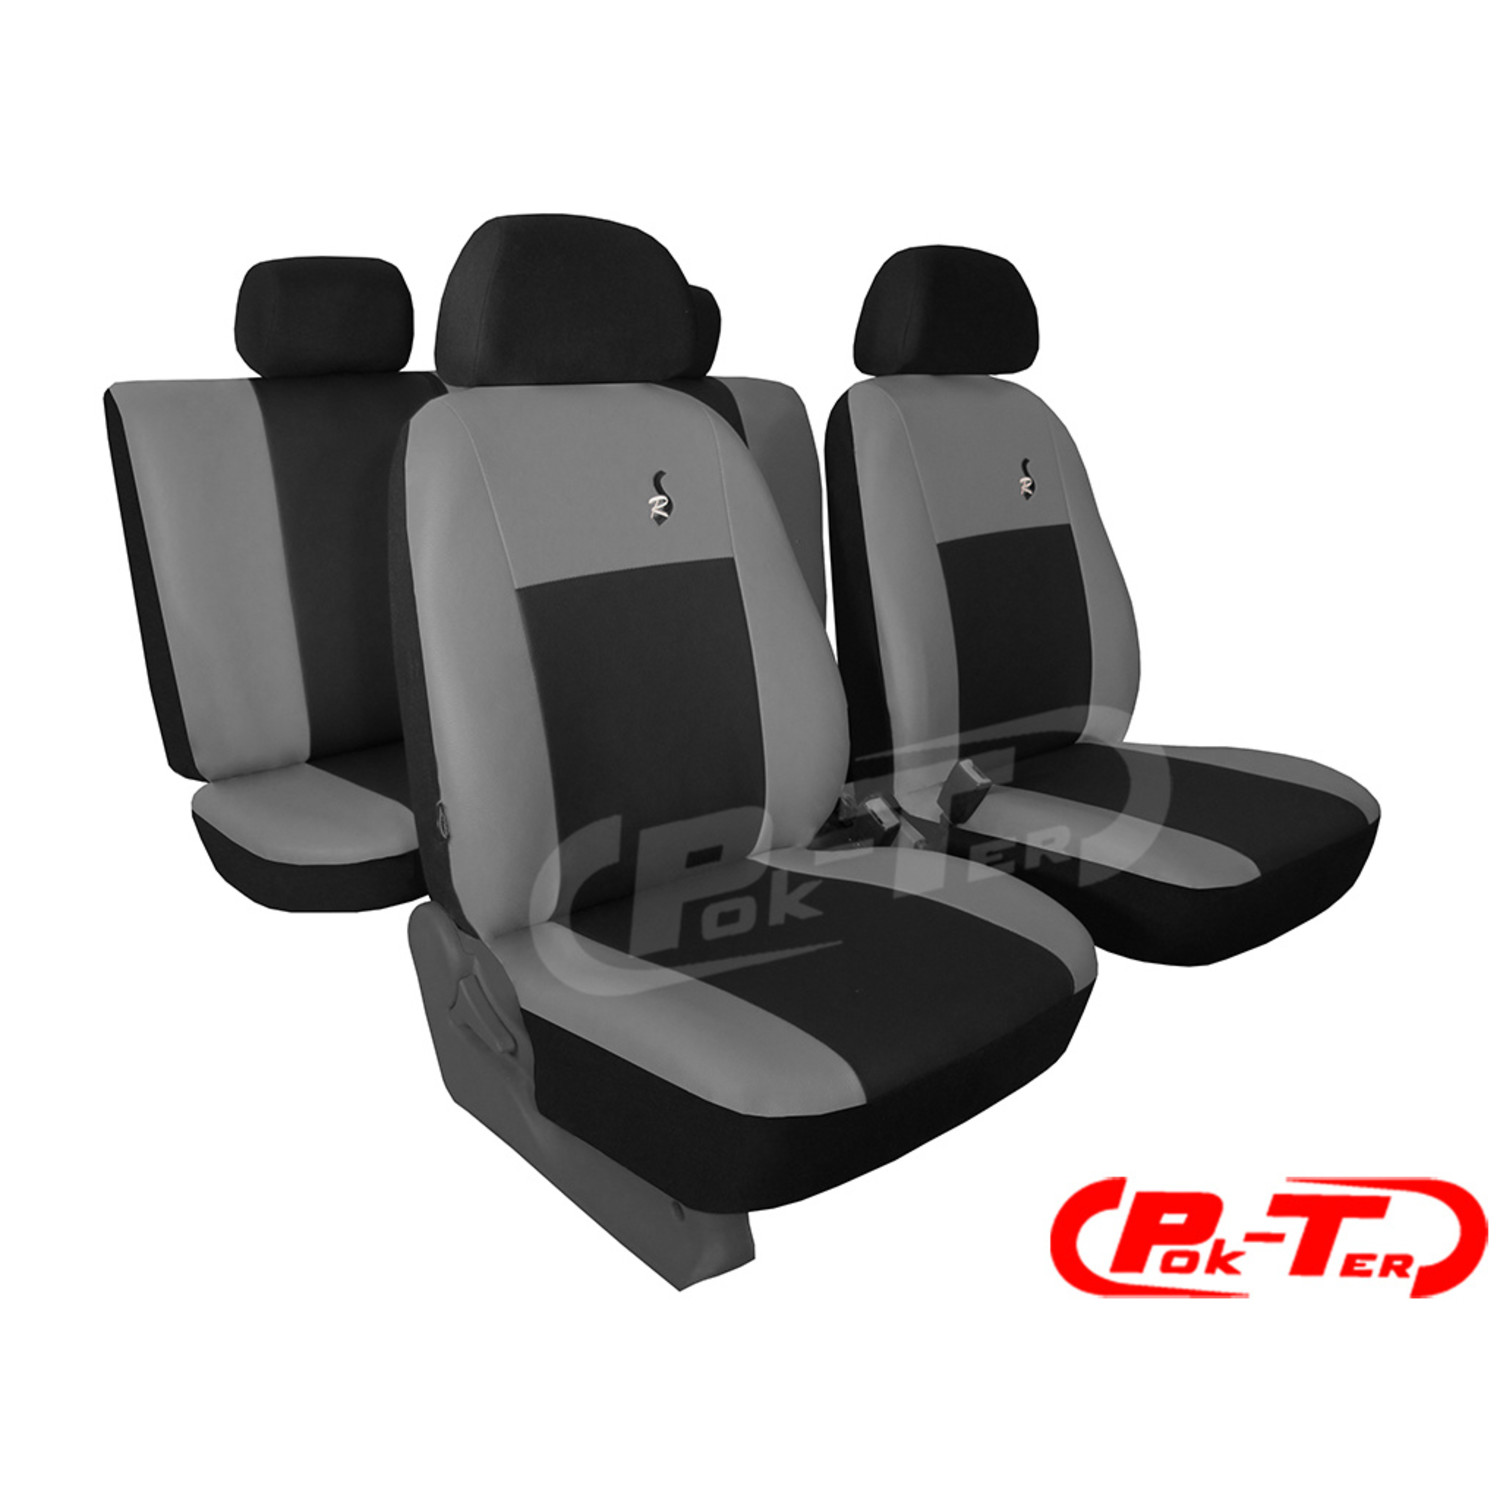 Maßgefertigter Autositzbezug GT Volkswagen VW Caddy - Maluch Premium  Autozubehör